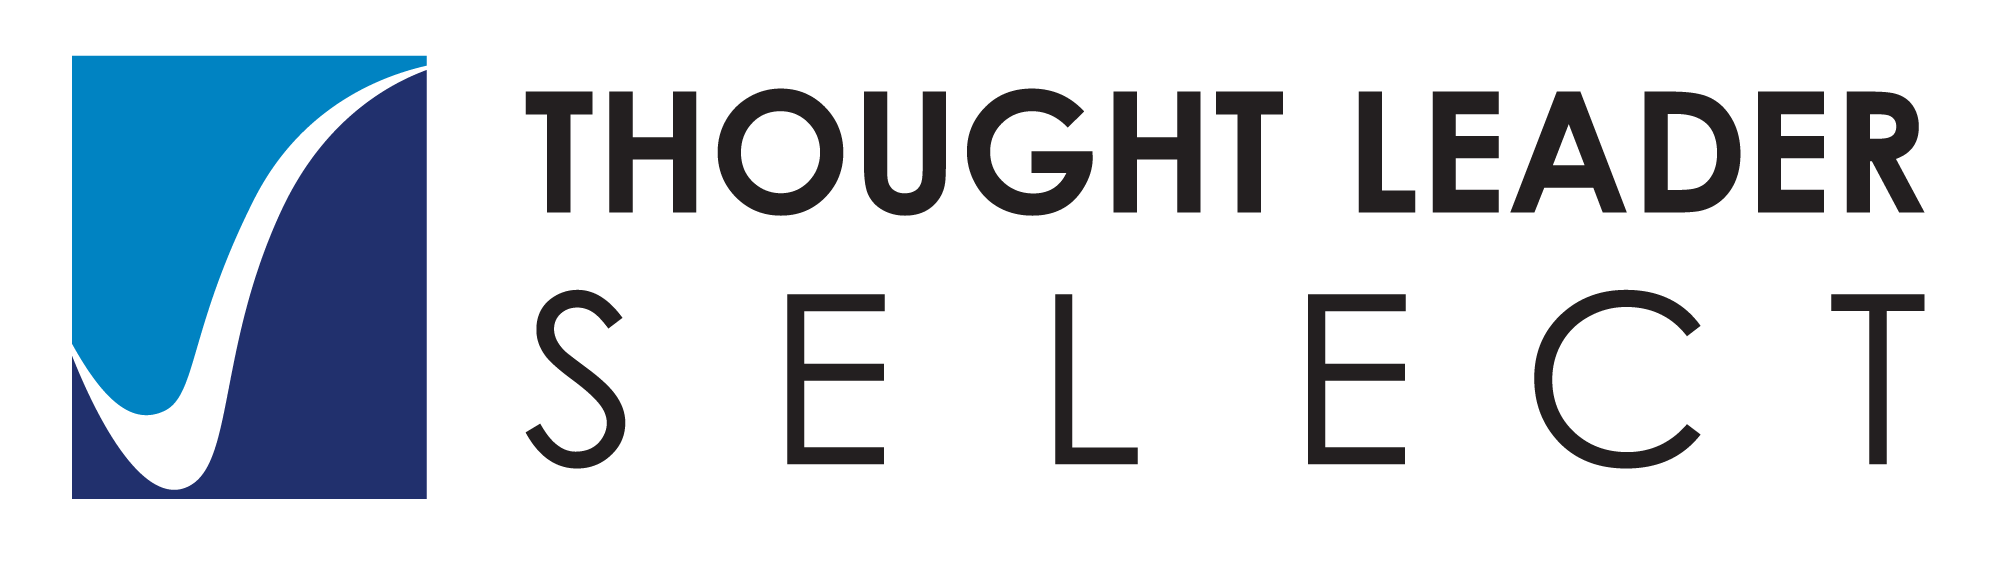 thoughtleaderselect Logo